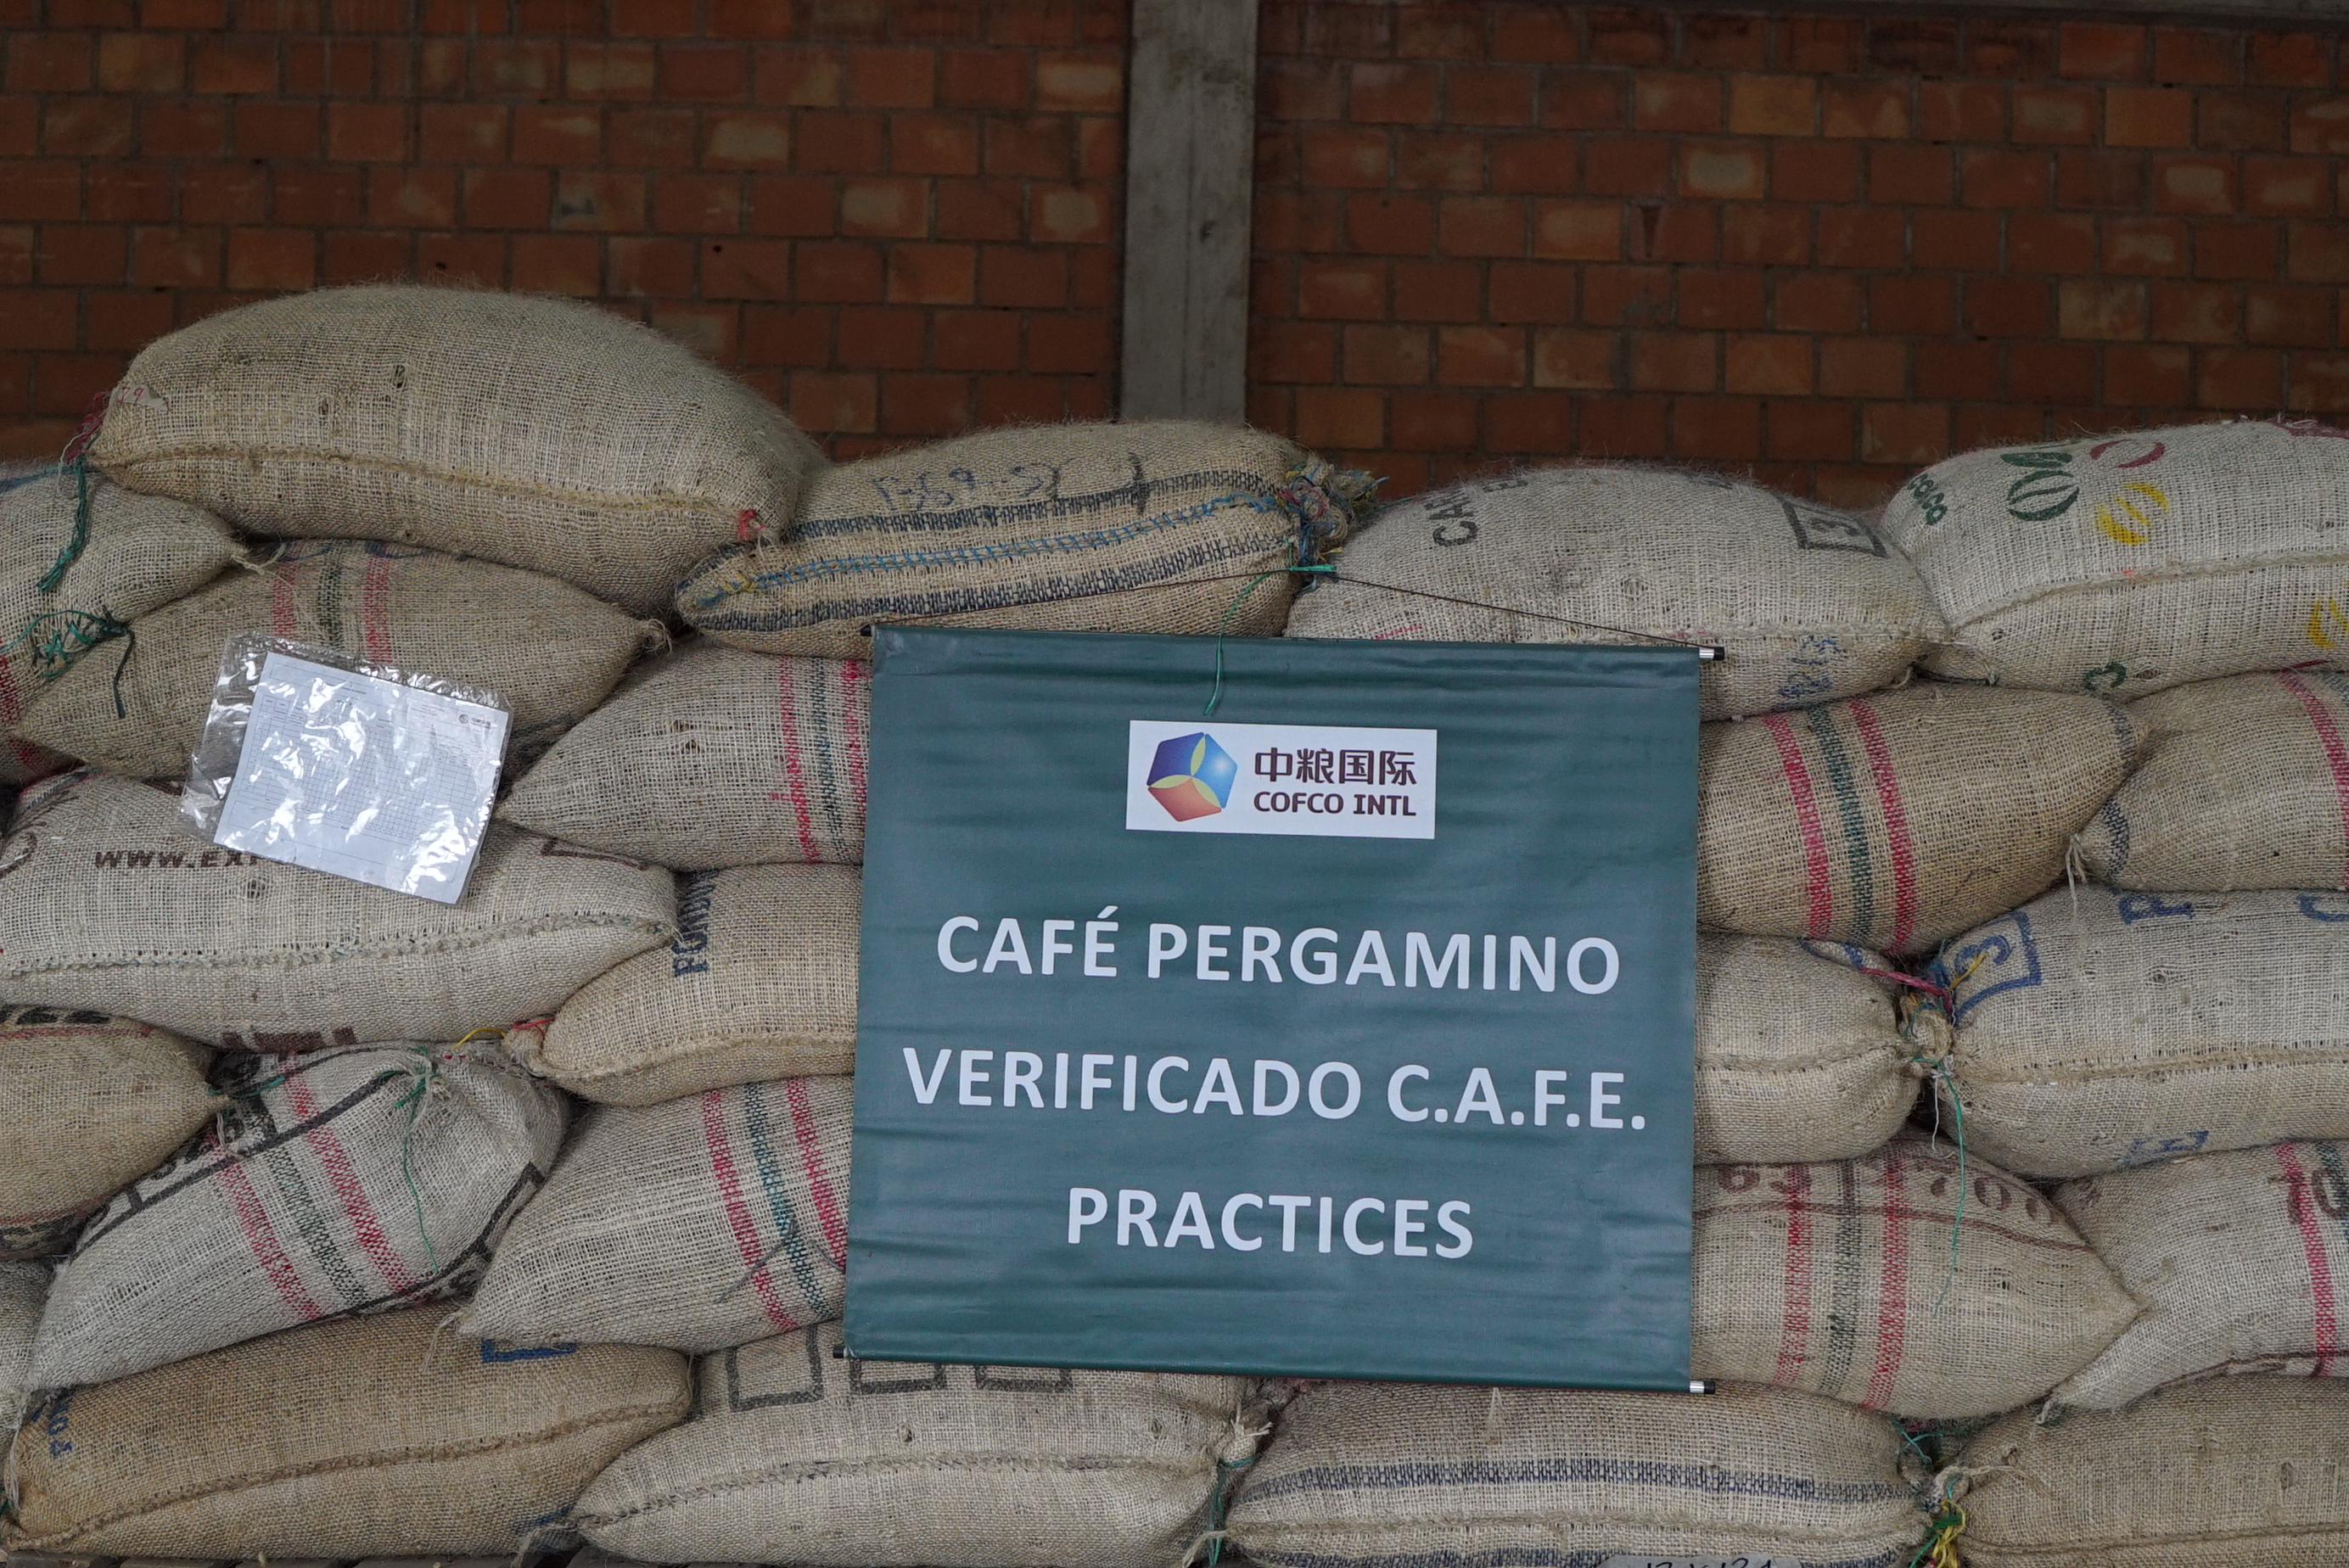 Café certificado pela C.A.F.E. esperando para ser enviado à Starbucks no armazém da COFCO em Huila. Na Colômbia, a COFCO trabalha com os programas de verificação e certificação da UTZ, Rainforest Alliance, C.A.F.E. Practices, Organic and Fair Trade.